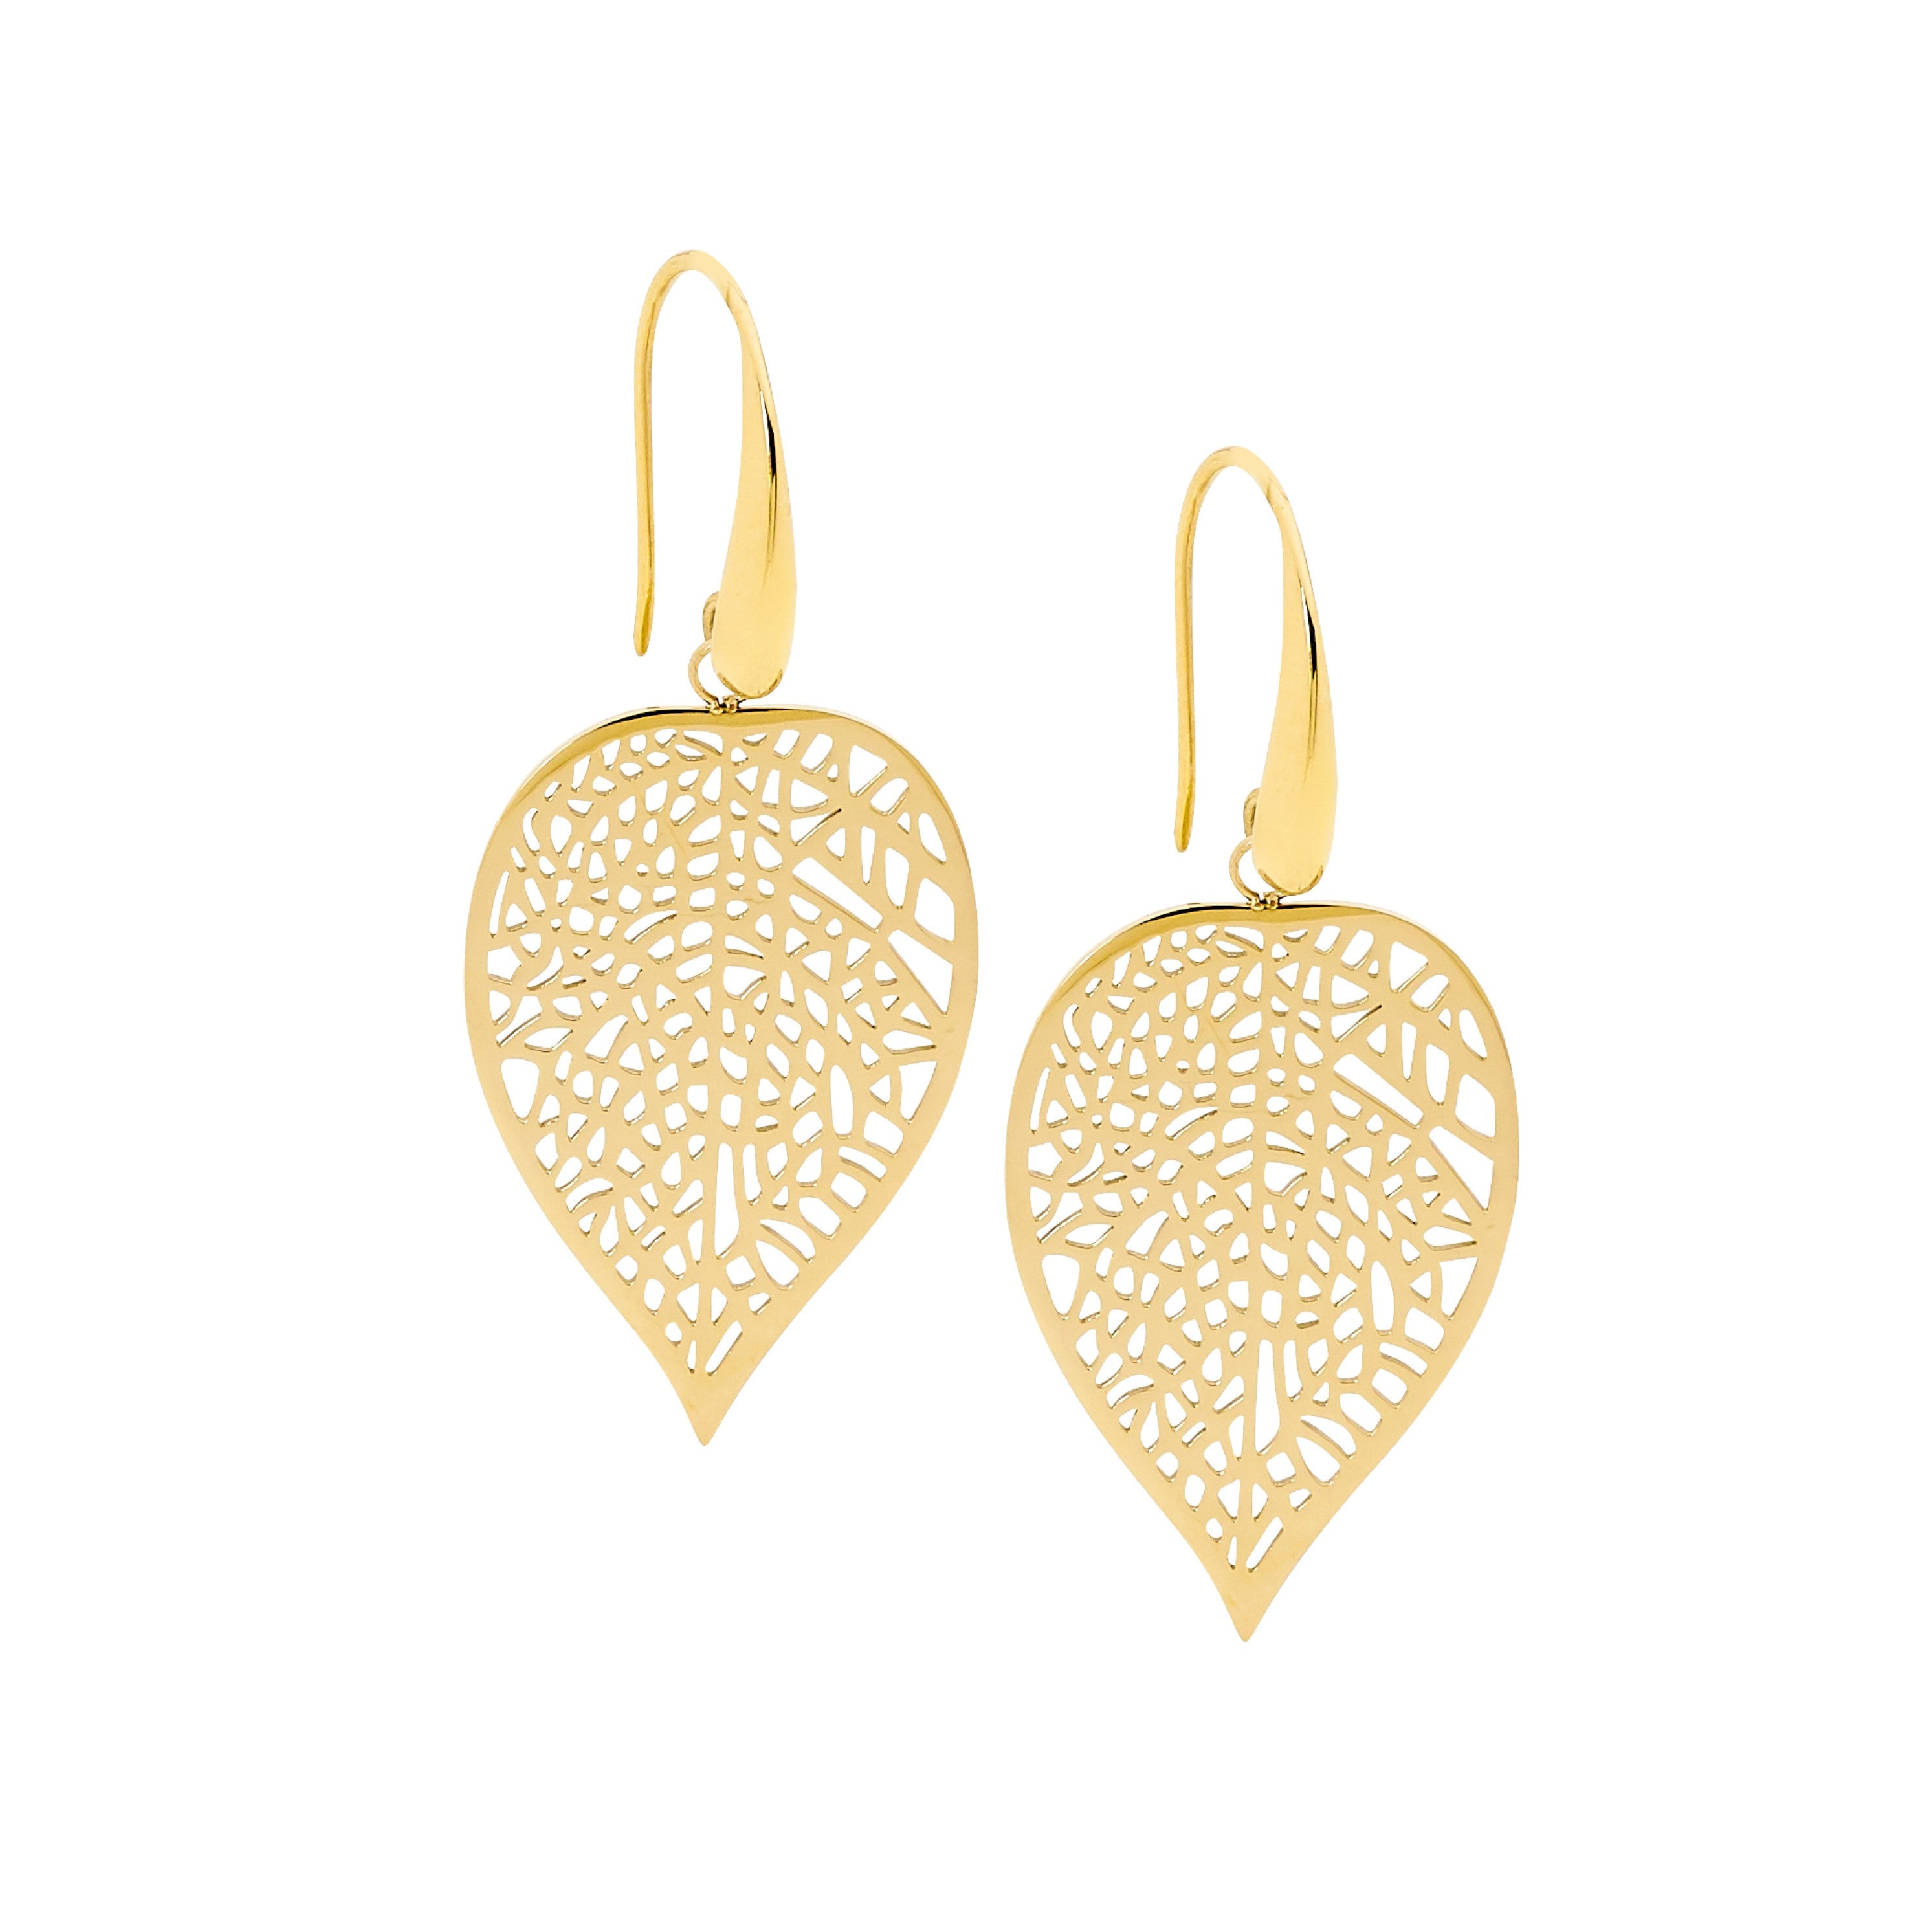 ELLANI Stainless Steel Leaf Drop Earrings Gold Plating